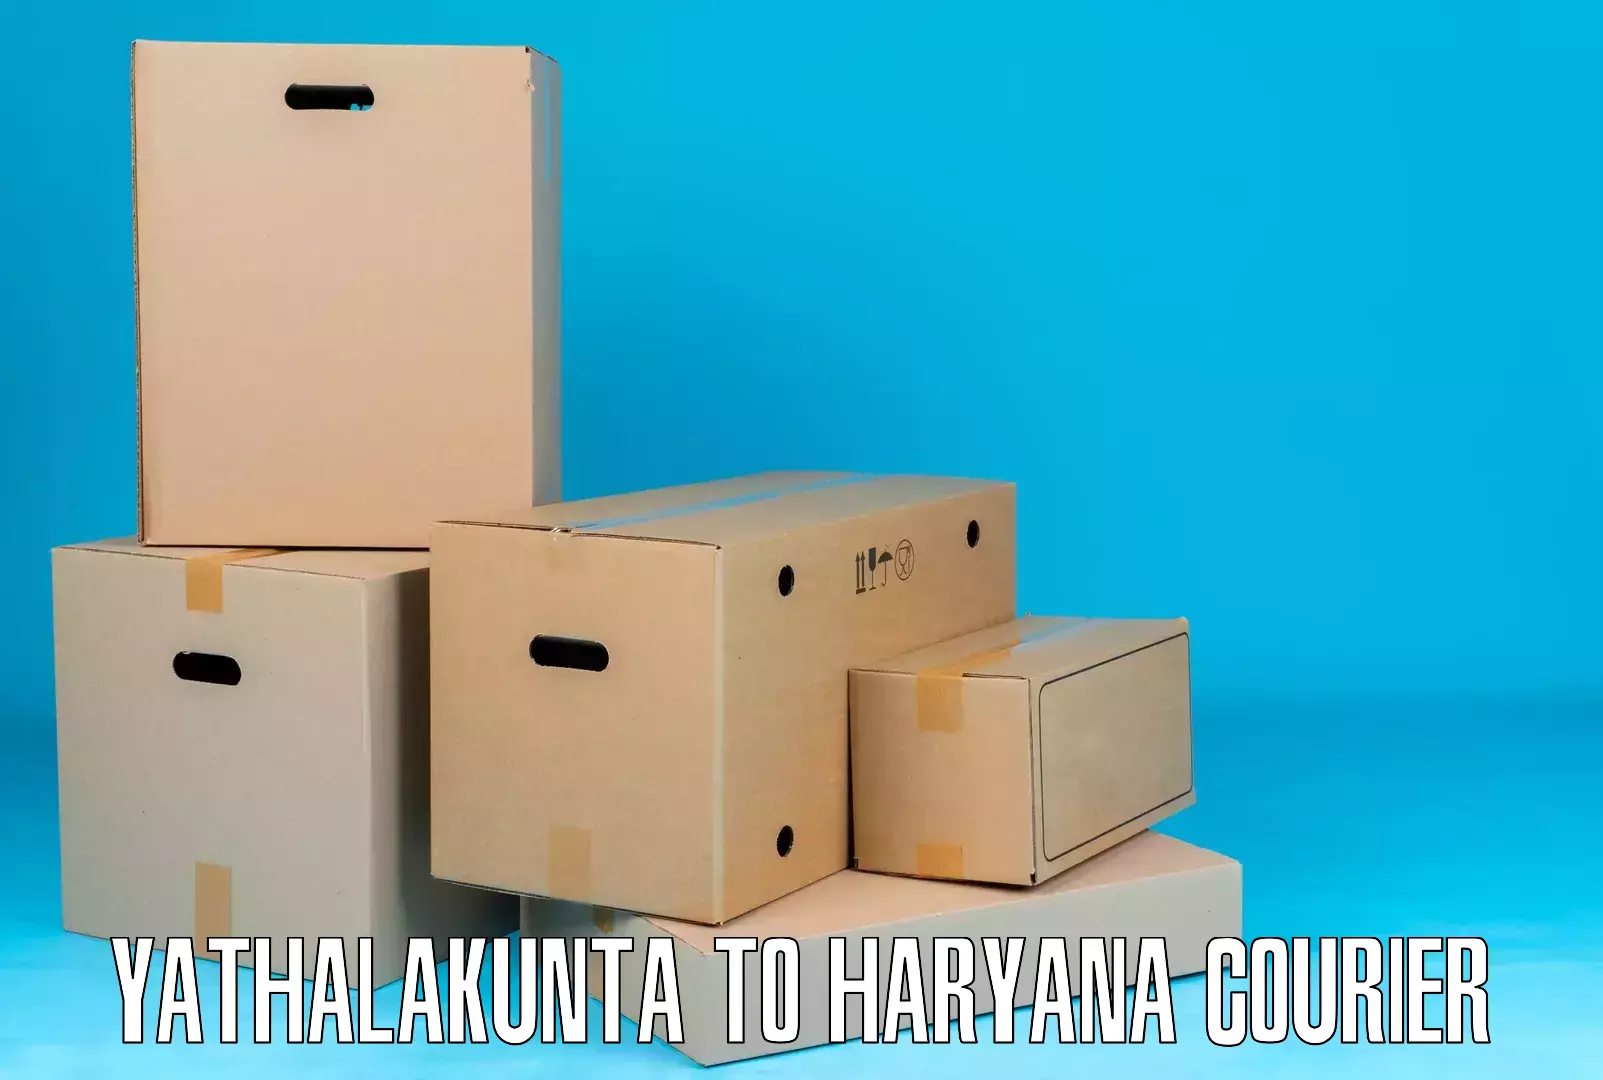 Door-to-door shipment Yathalakunta to Ambala